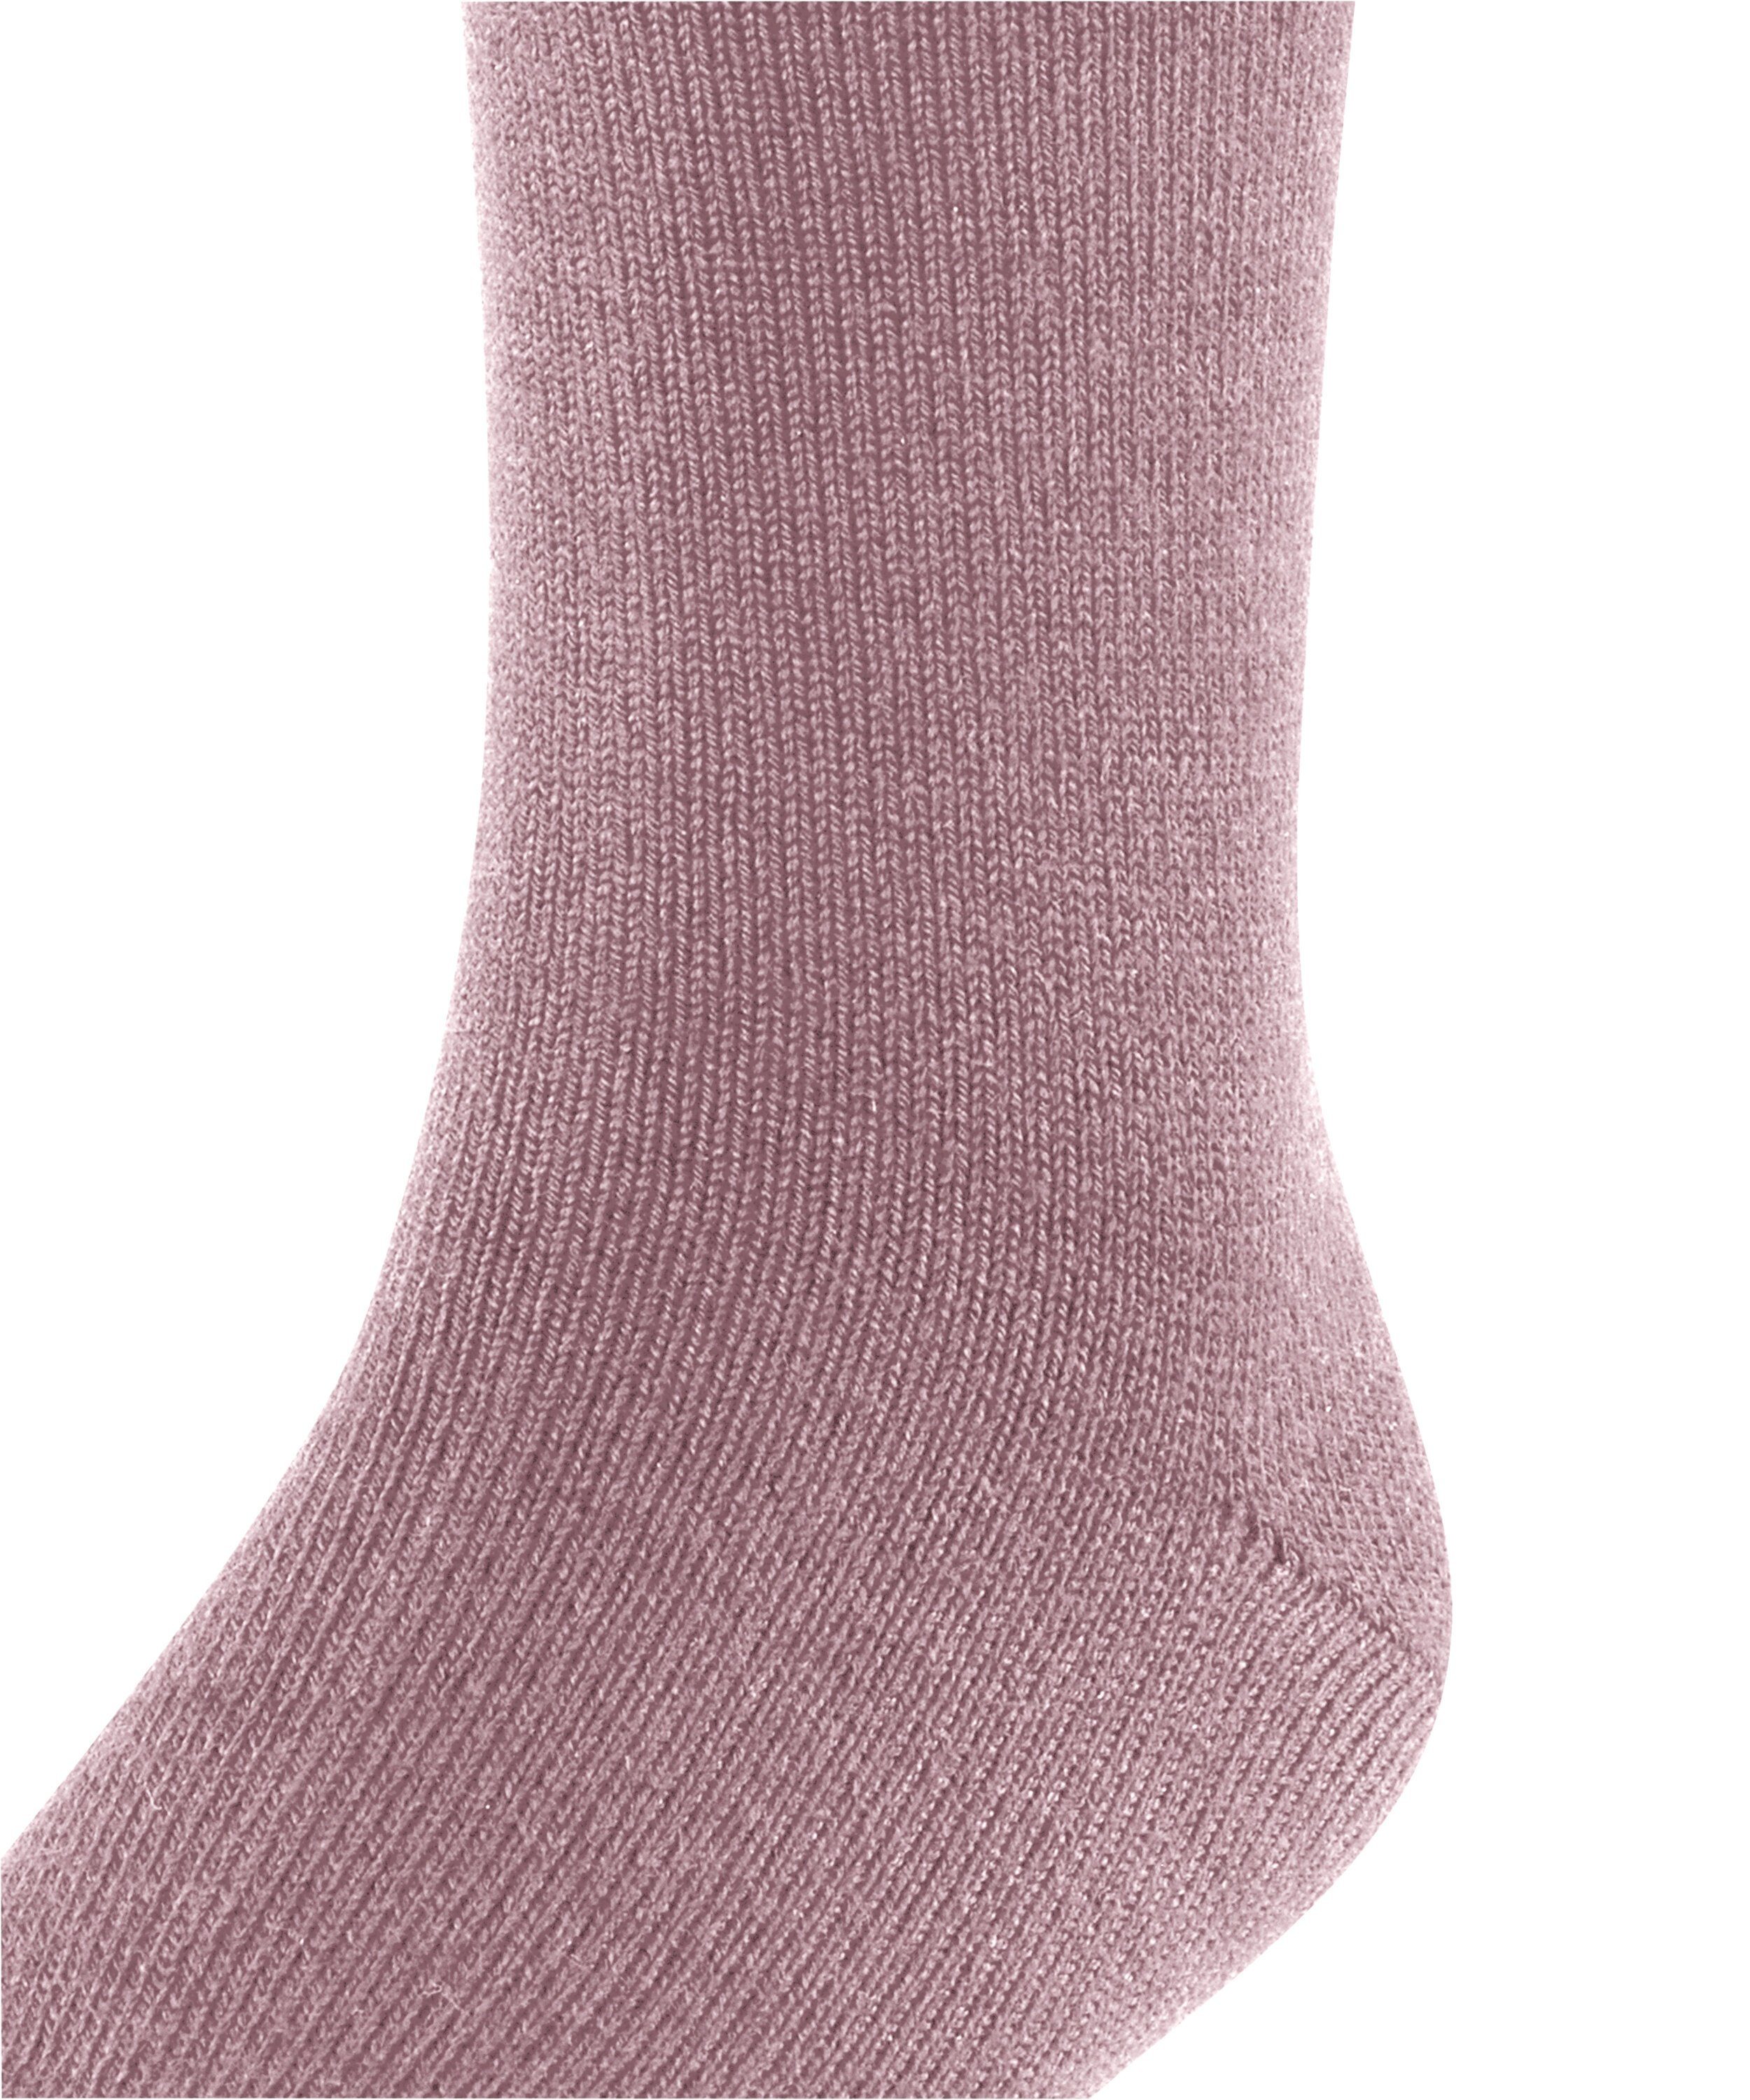 FALKE Socken brick (1-Paar) Comfort Wool (8770)